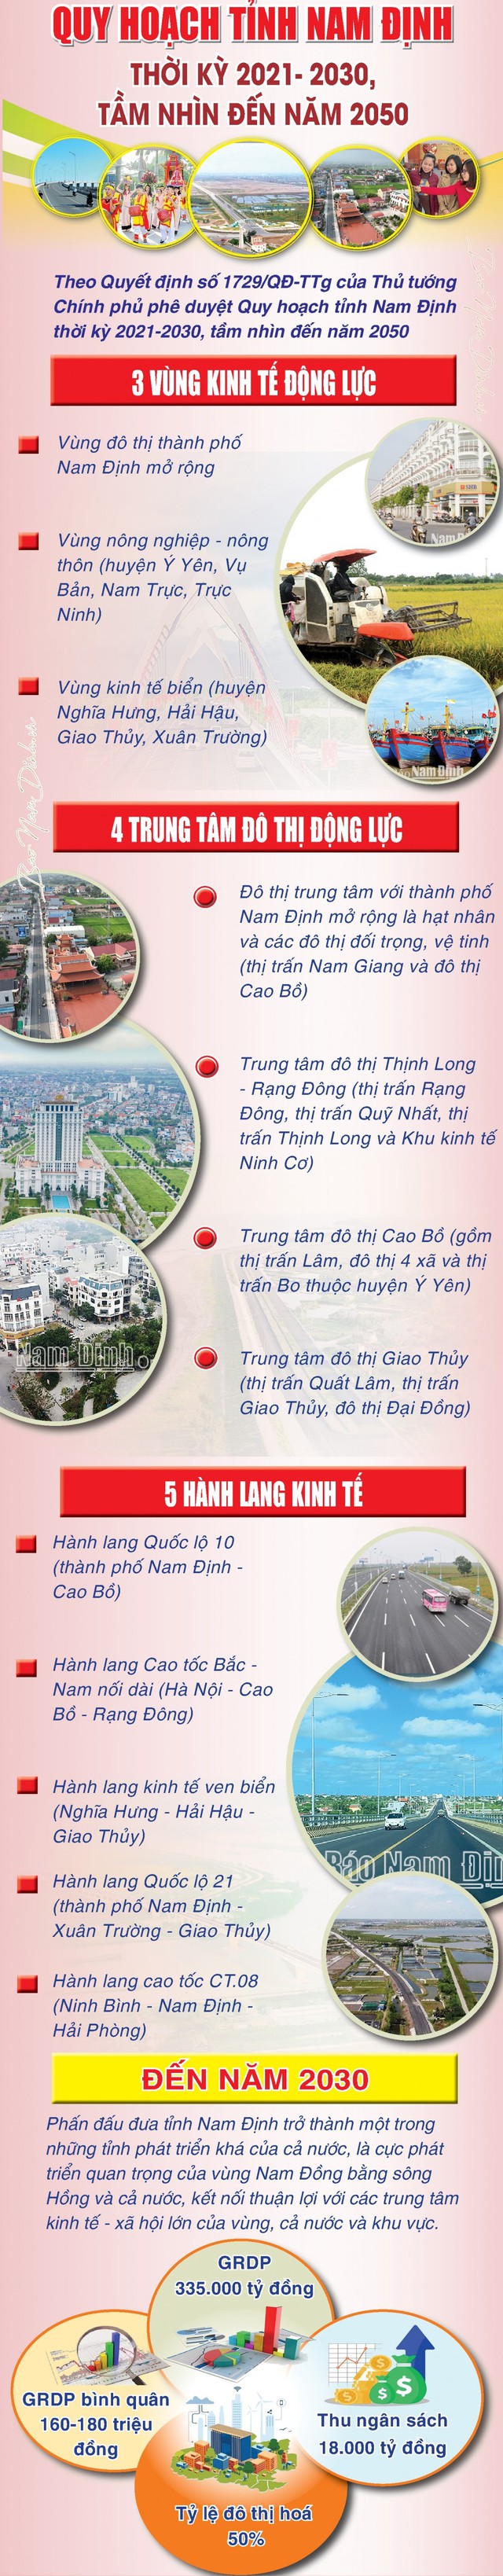 Mở rộng TP Nam Định, phát triển 5 hành lang kinh tế đưa đất học Thành Nam trở thành động lực phát triển Vùng đồng bằng Sông Hồng- Ảnh 2.